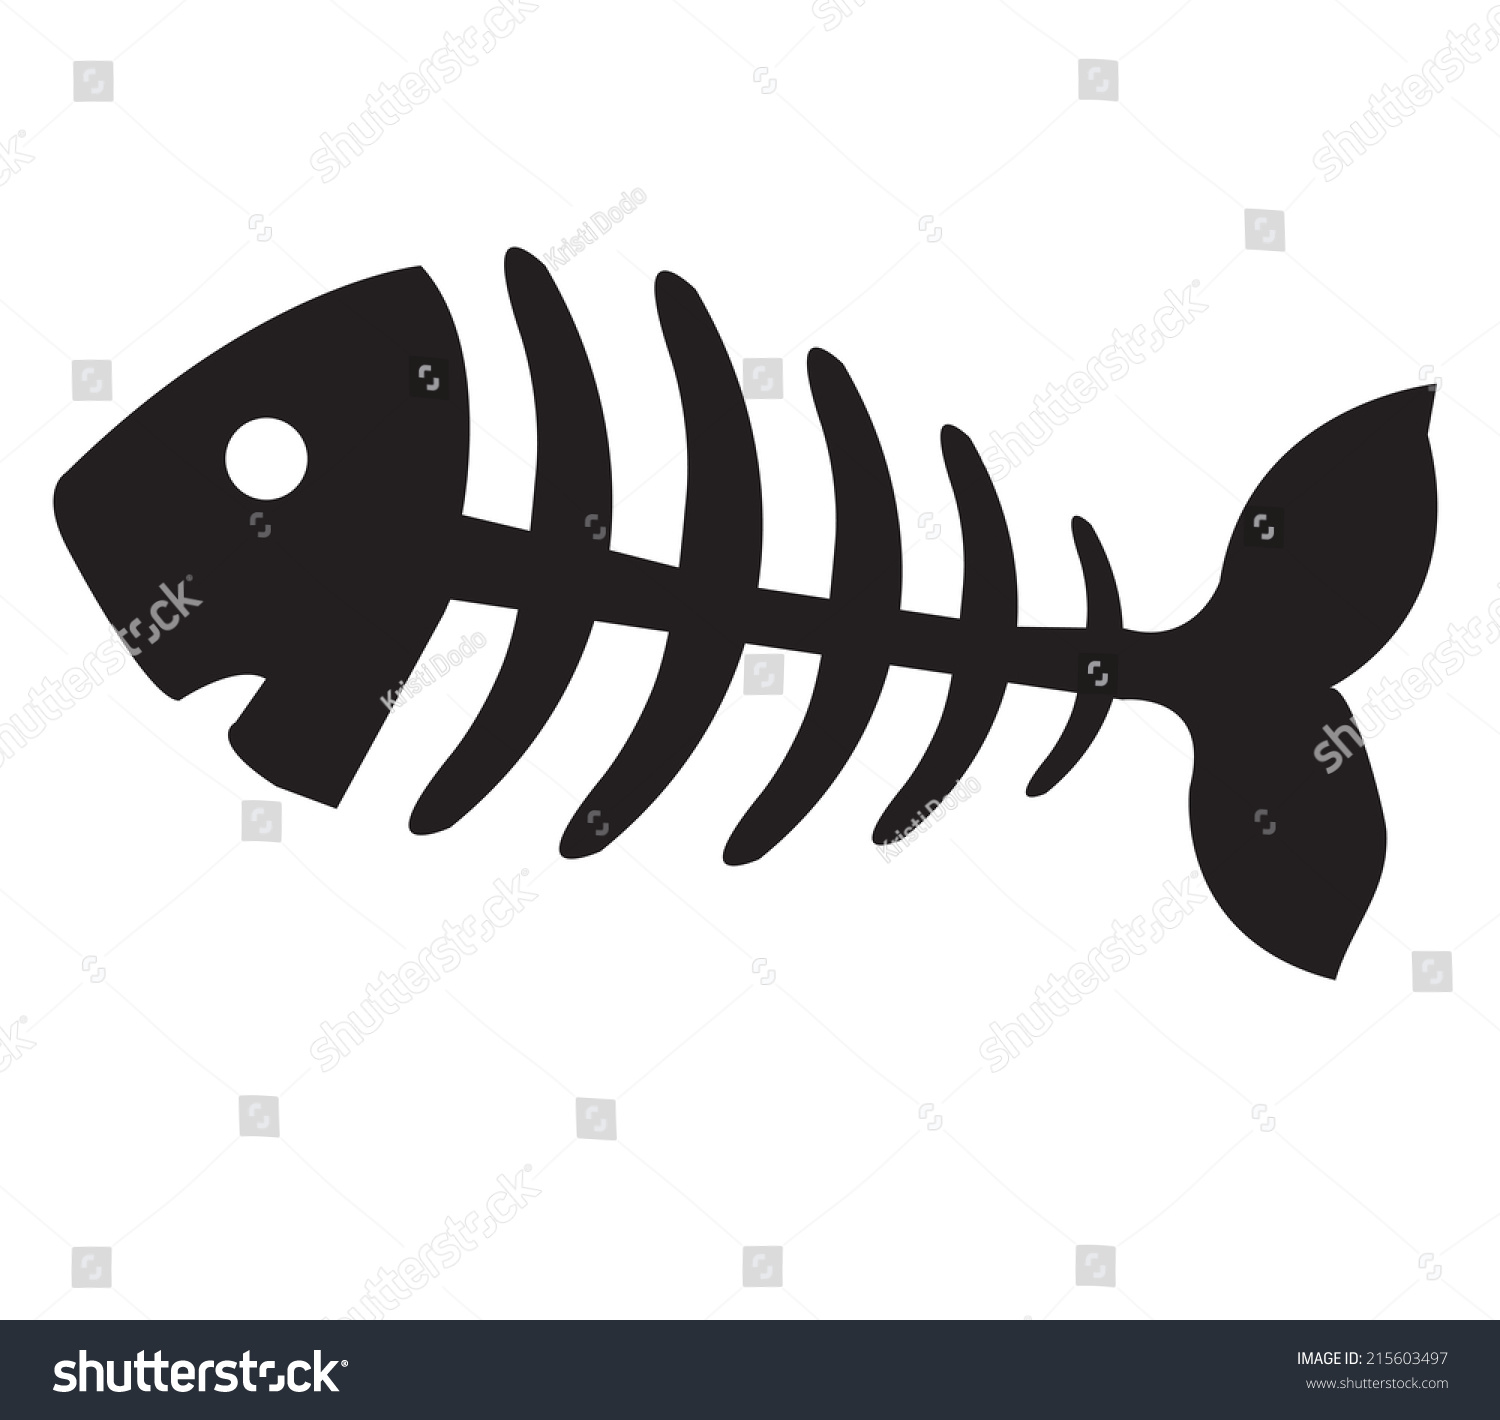 Рыбья косточка